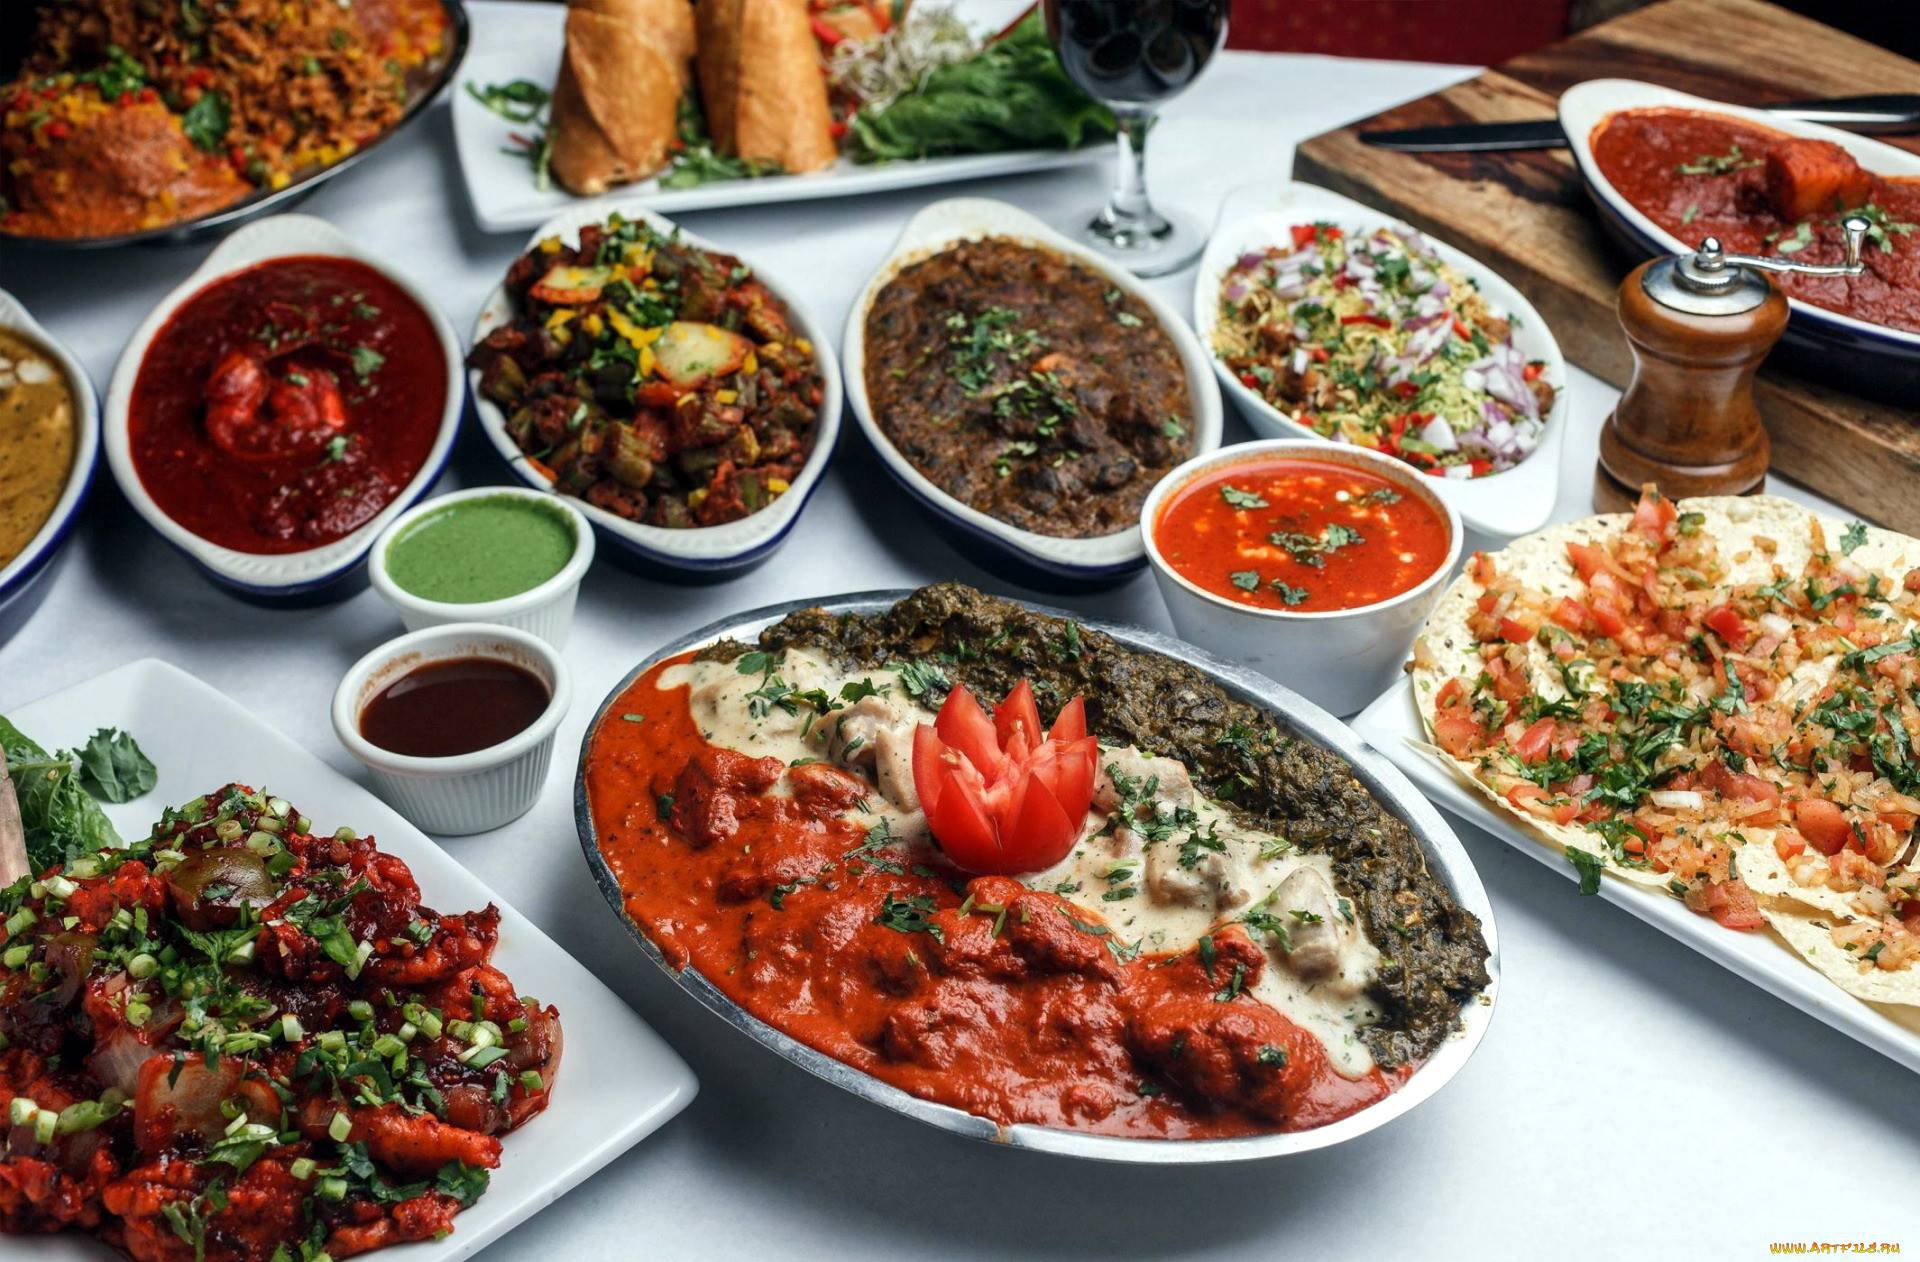 Индийская кухня: блюда, которые надо попробовать
set travel индийская кухня: блюда, которые надо попробовать